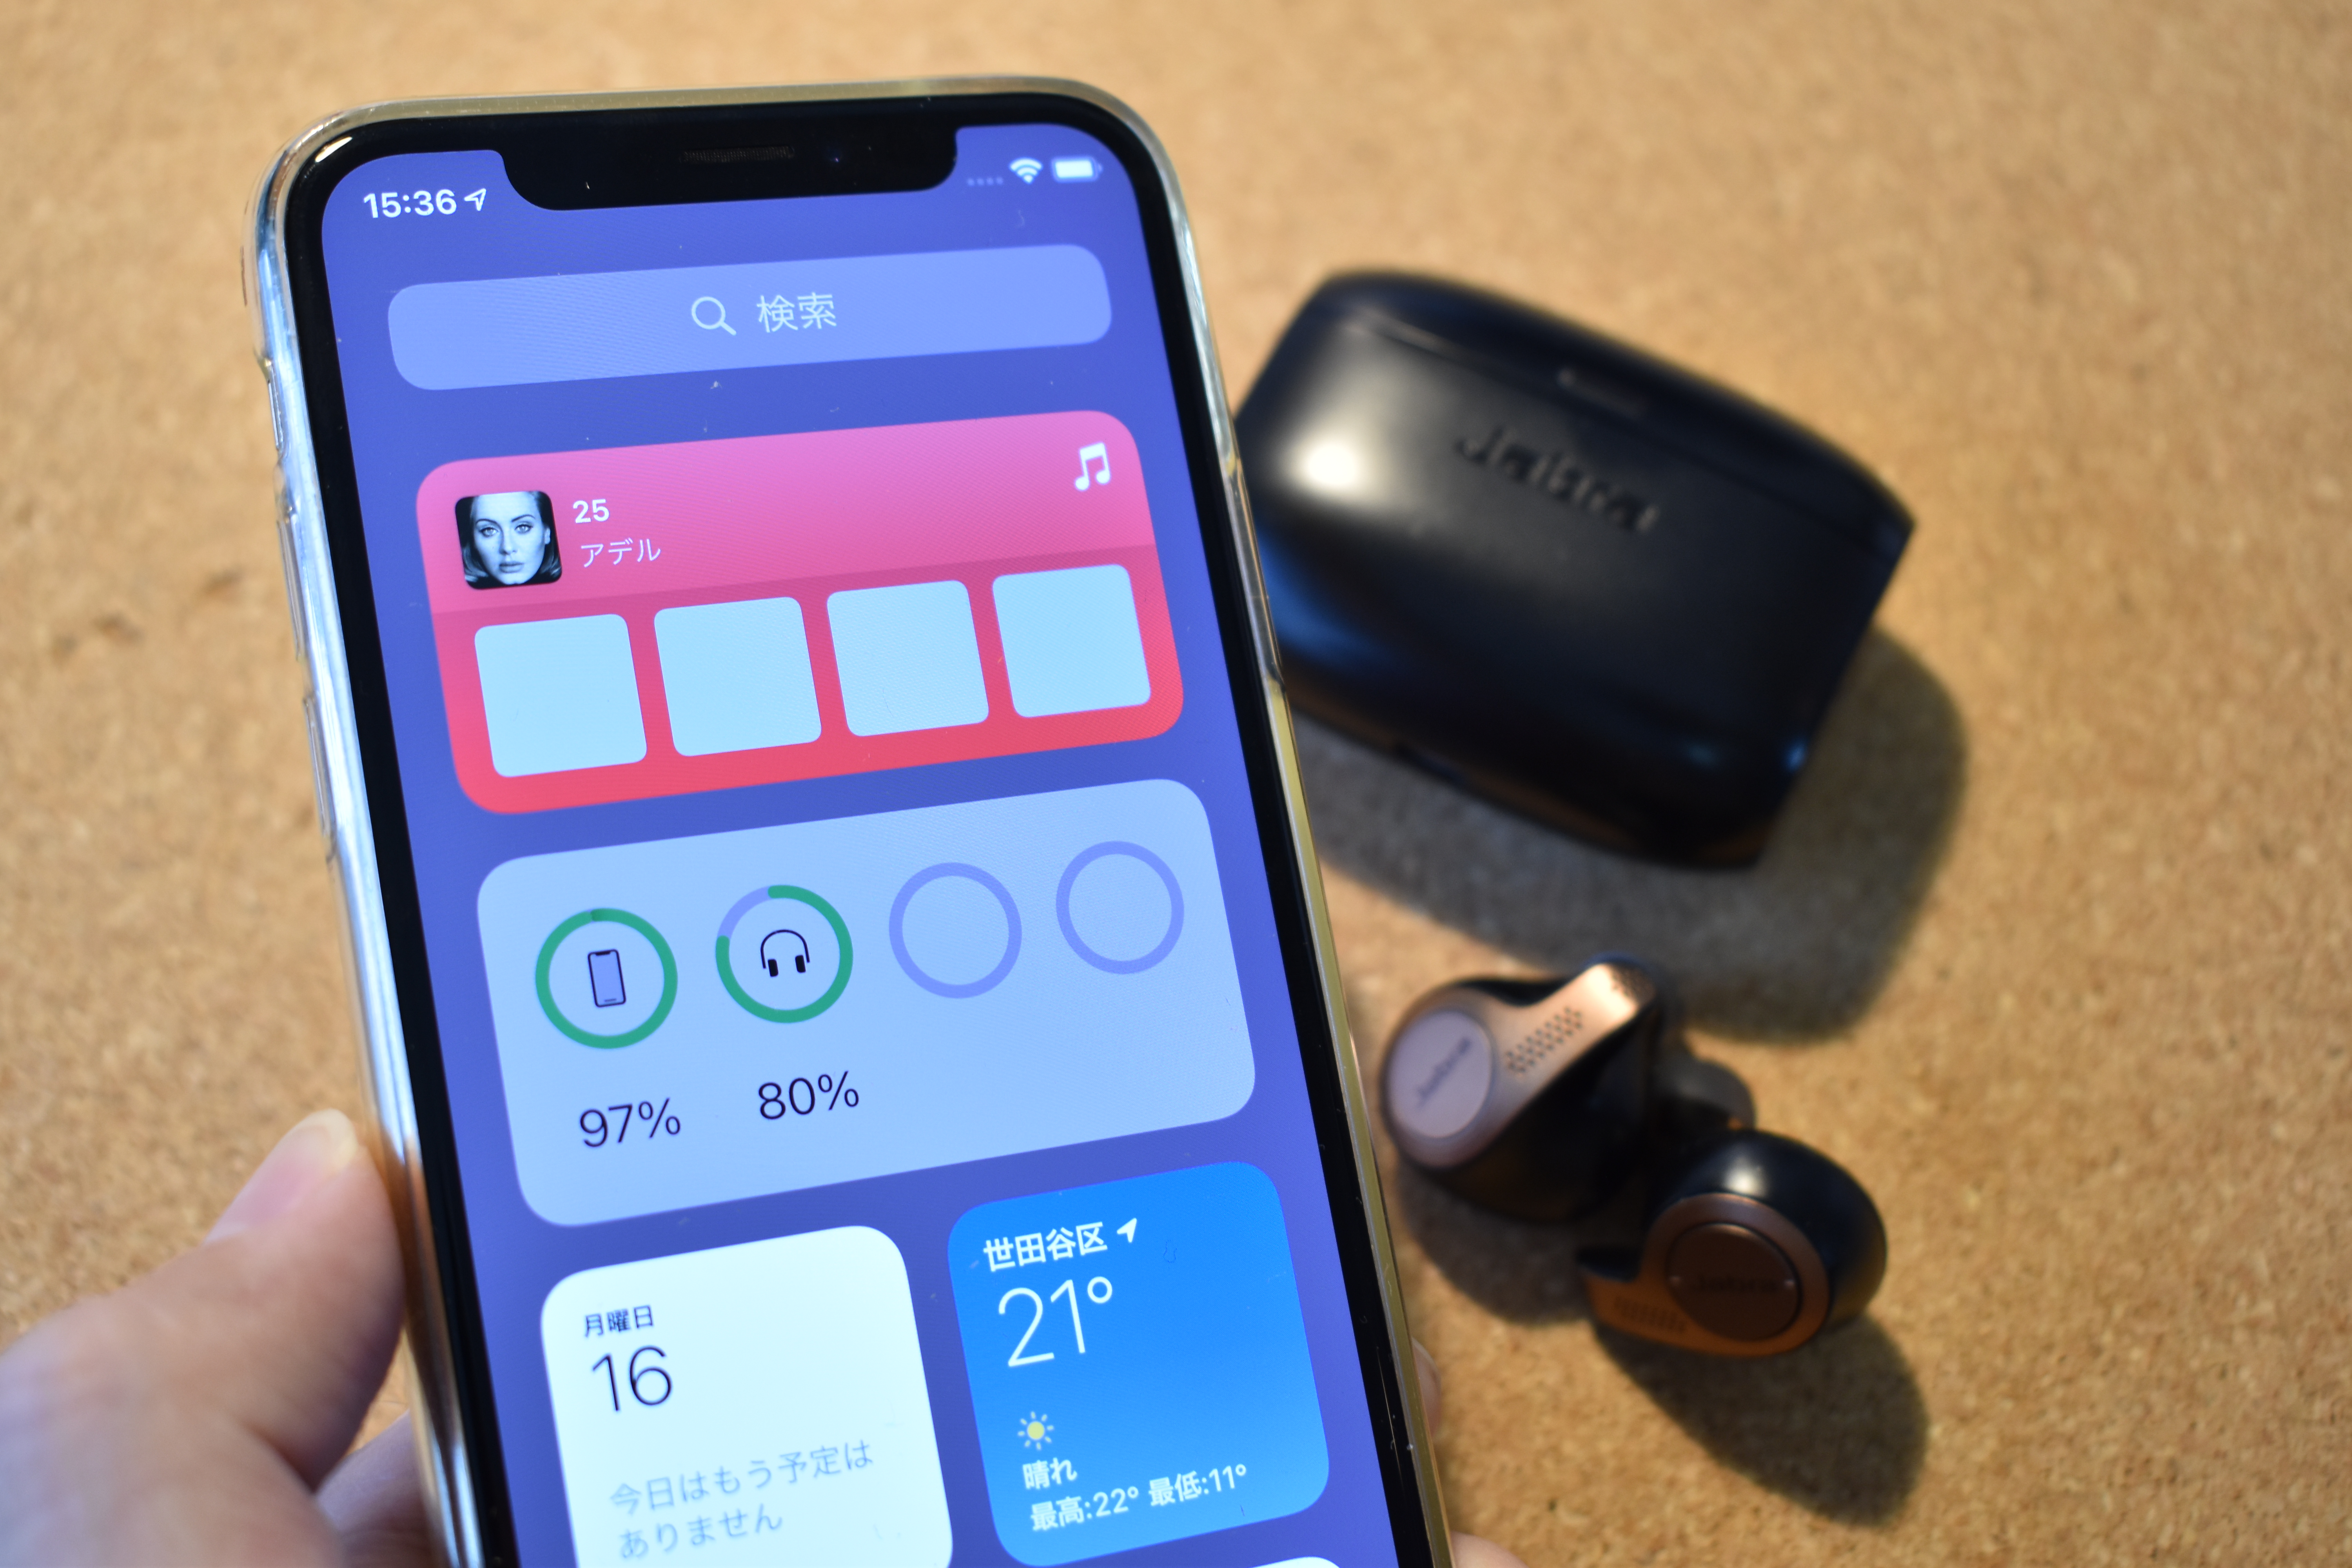 ワイヤレスイヤホンの電池残量がひと目でわかるウィジェットの便利機能 Iphone Tips Engadget 日本版